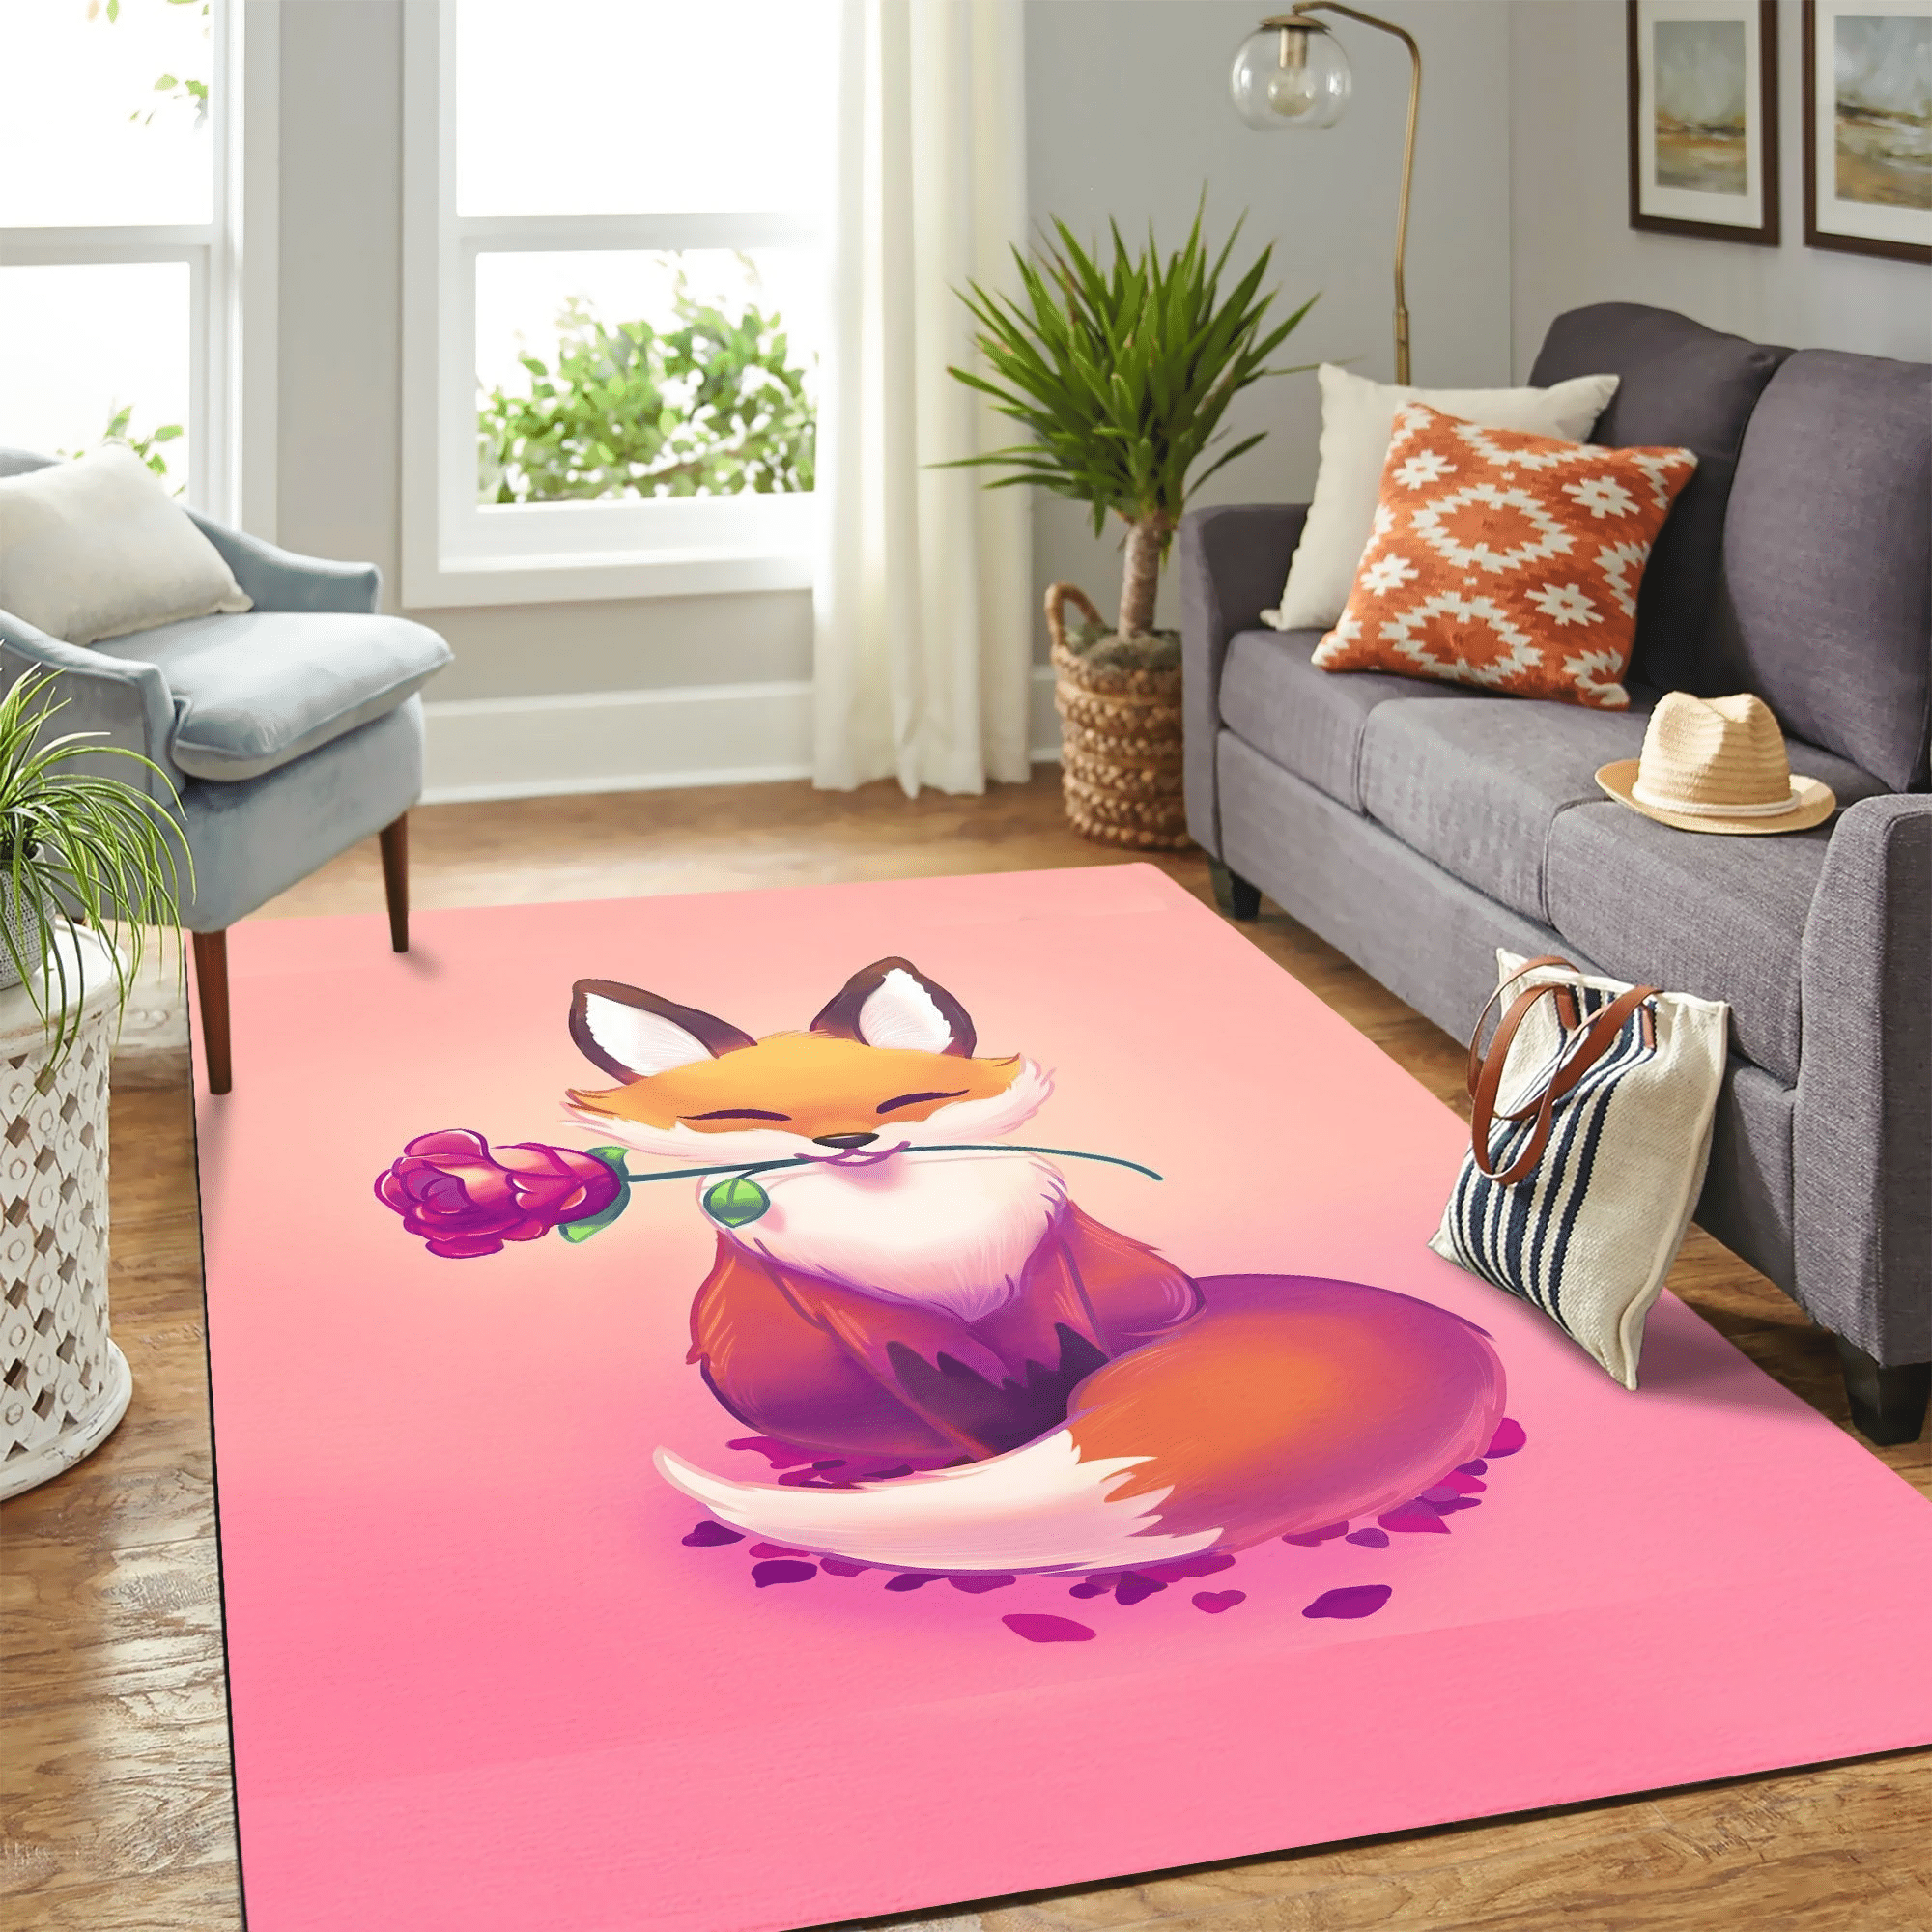 Cute Fox Carpet Floor Area Rug Chrismas Gift - Indoor Outdoor Rugs